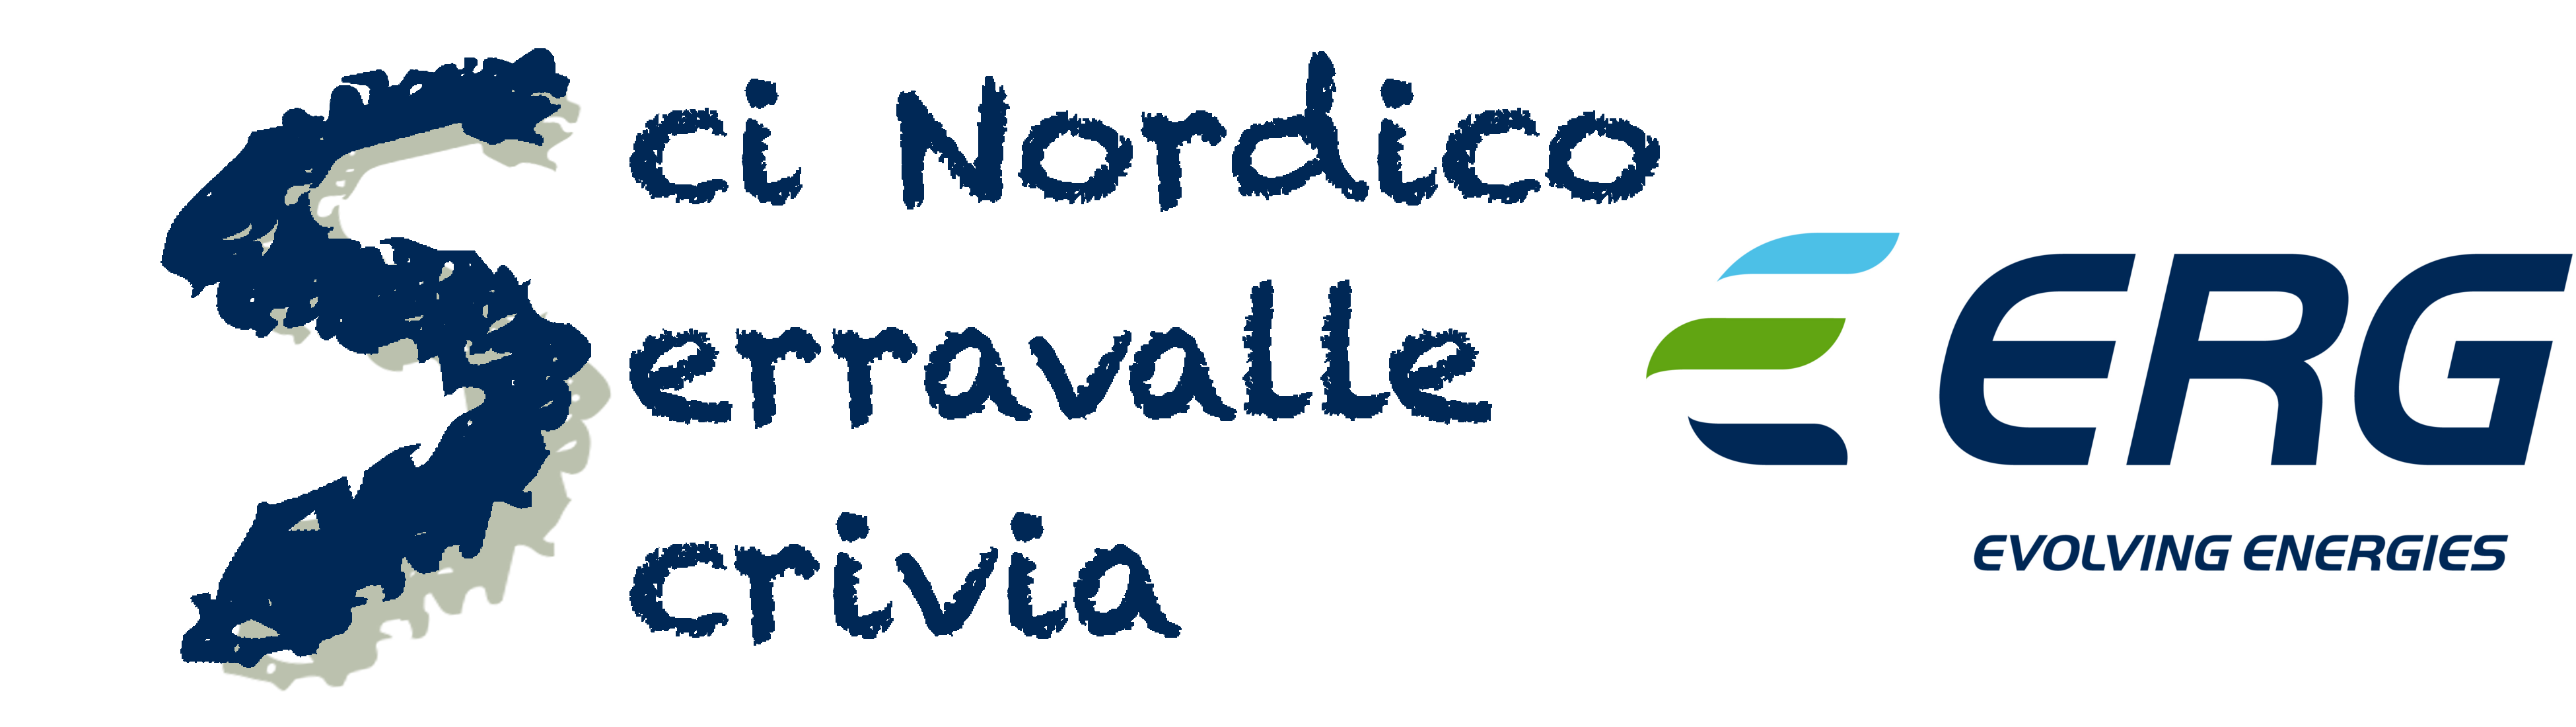 Sci Nordico Serravalle Scrivia